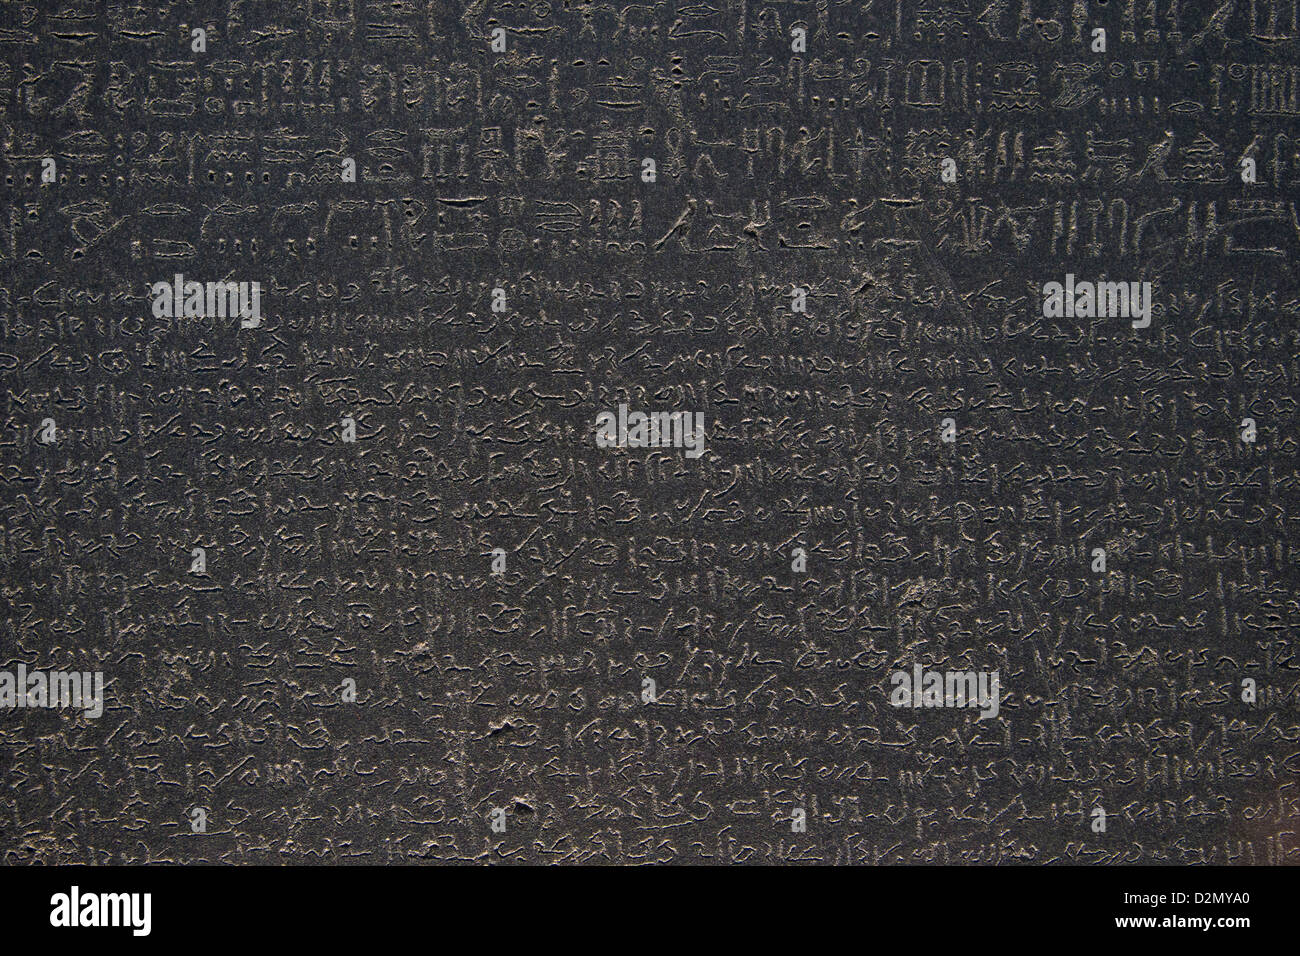 Geroglifici egiziani e demotic script, Rosetta Stone, 196 BC, il British Museum di Londra, Inghilterra, Regno Unito, GB, Isole britanniche Foto Stock